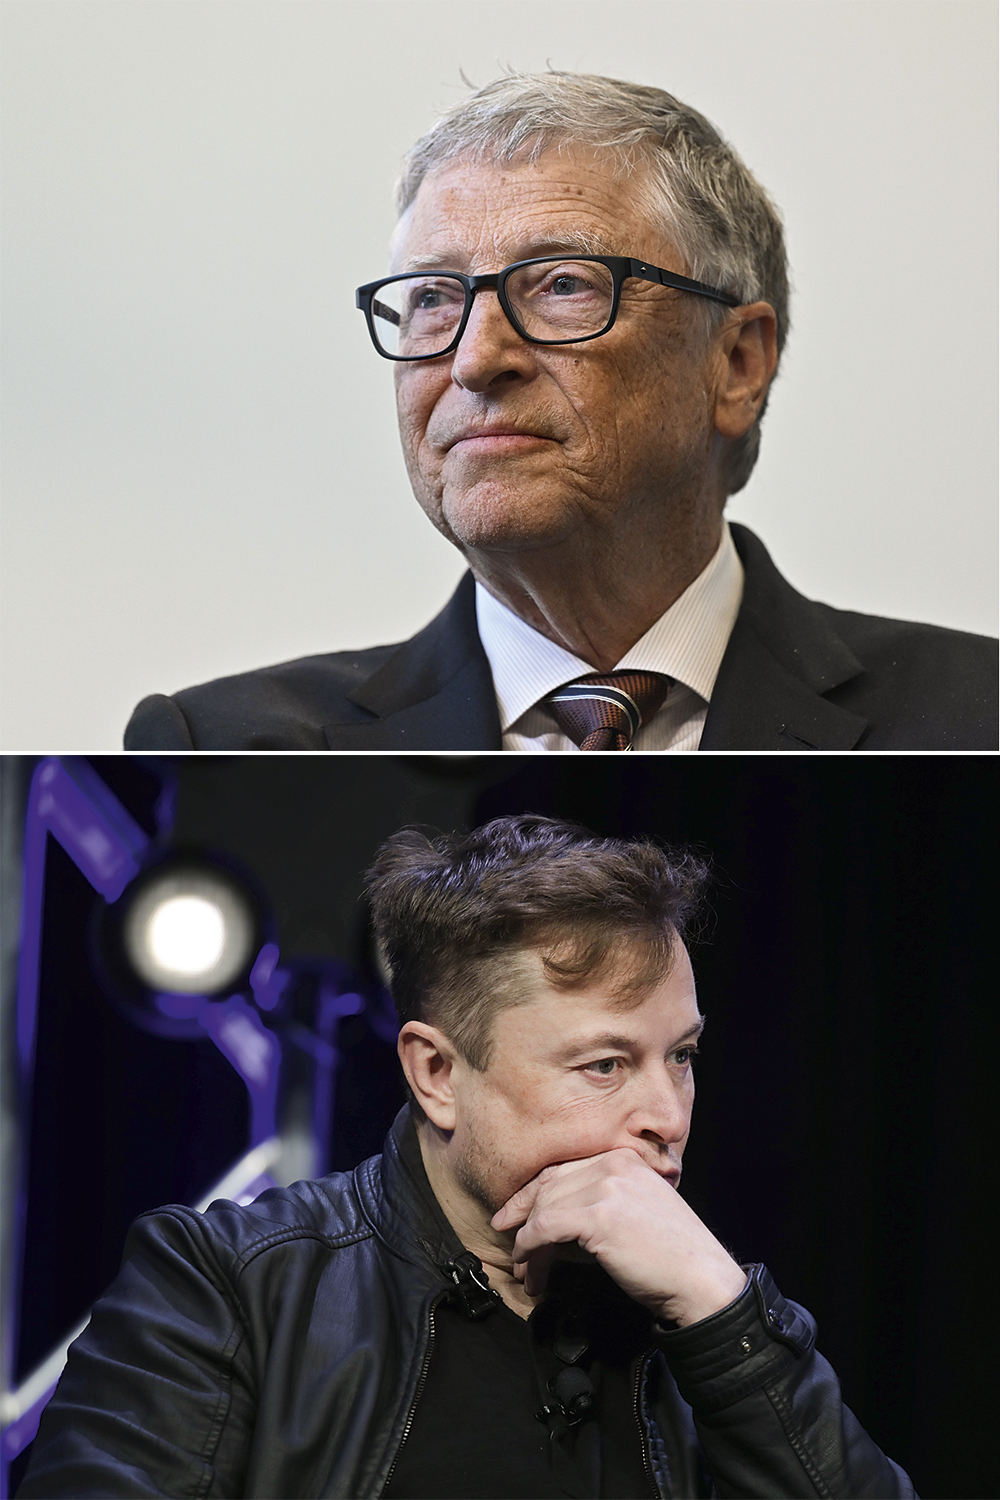 FUTURO EM JOGO - Visões opostas: Bill Gates (no alto) acredita que a tecnologia poderá reduzir desigualdades, enquanto Musk prefere detê-la já